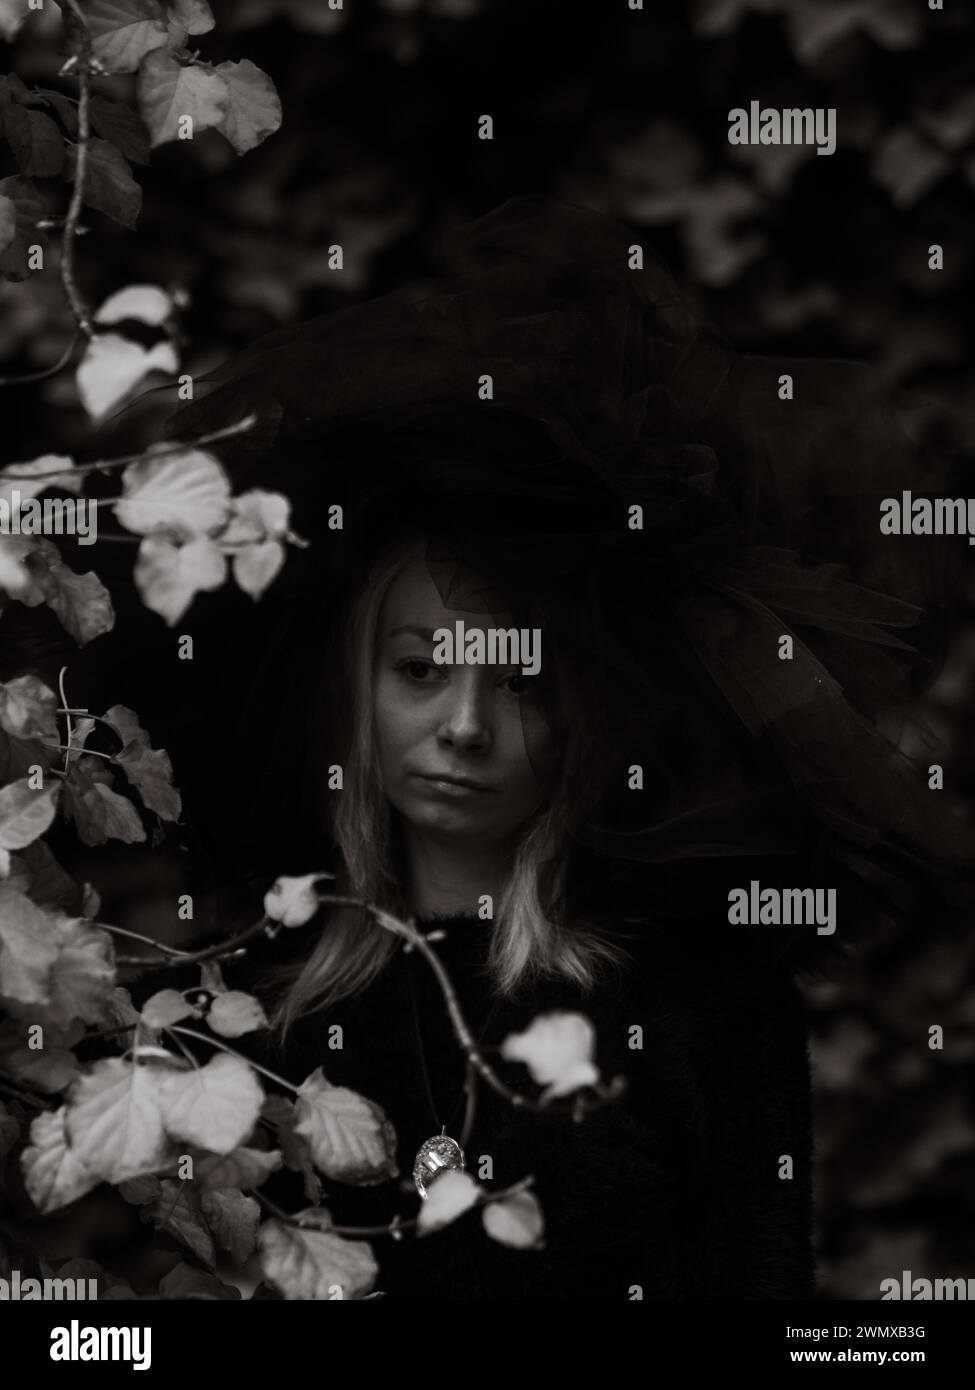 Immagine malinconica in bianco e nero del volto di una donna parzialmente oscurata dal cappello e dalle foglie Foto Stock